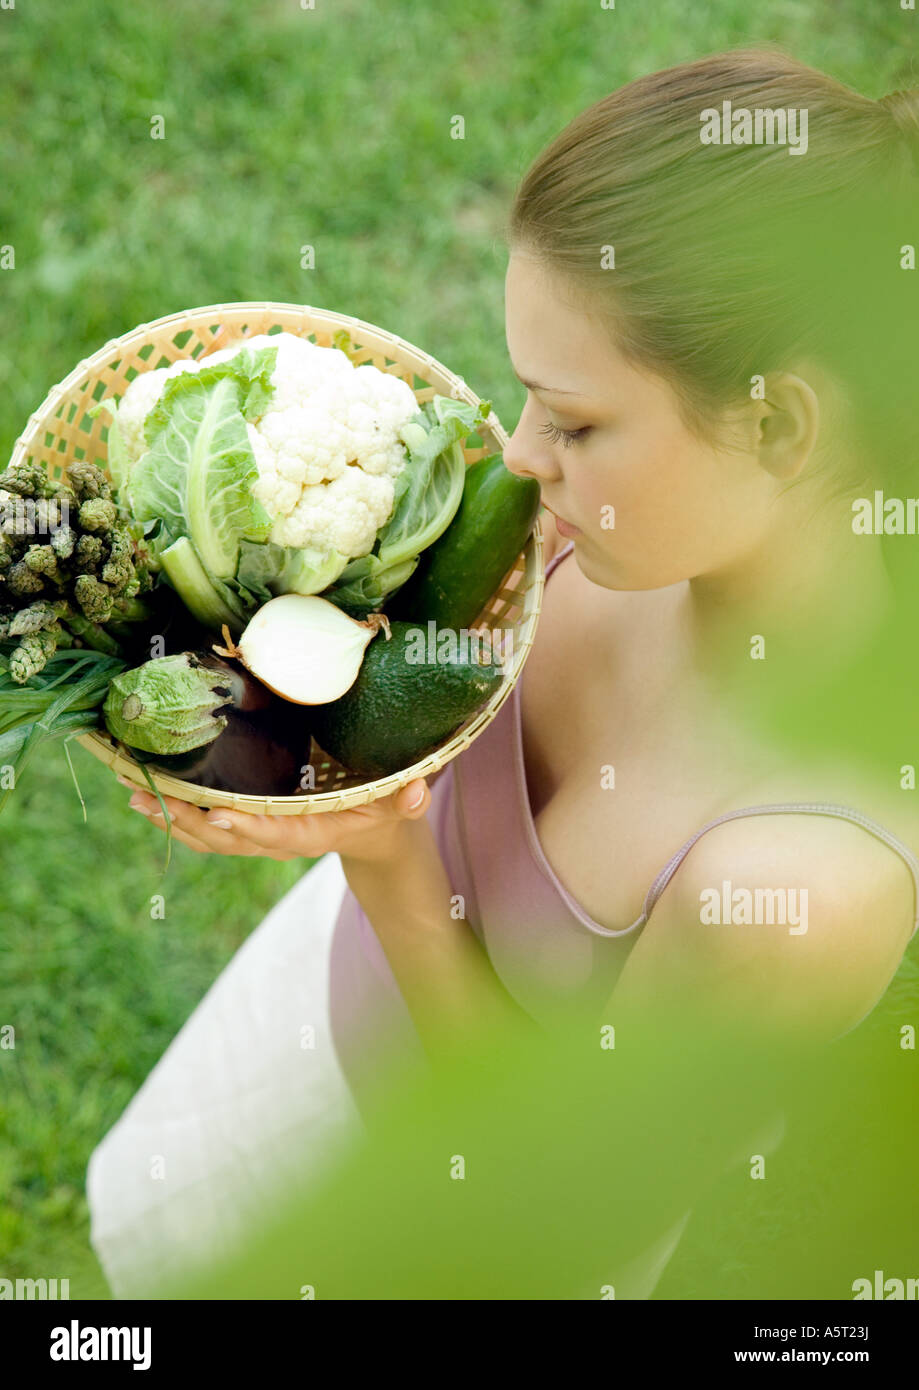 Woman holding basket full of fresh vegetables Stock Photo